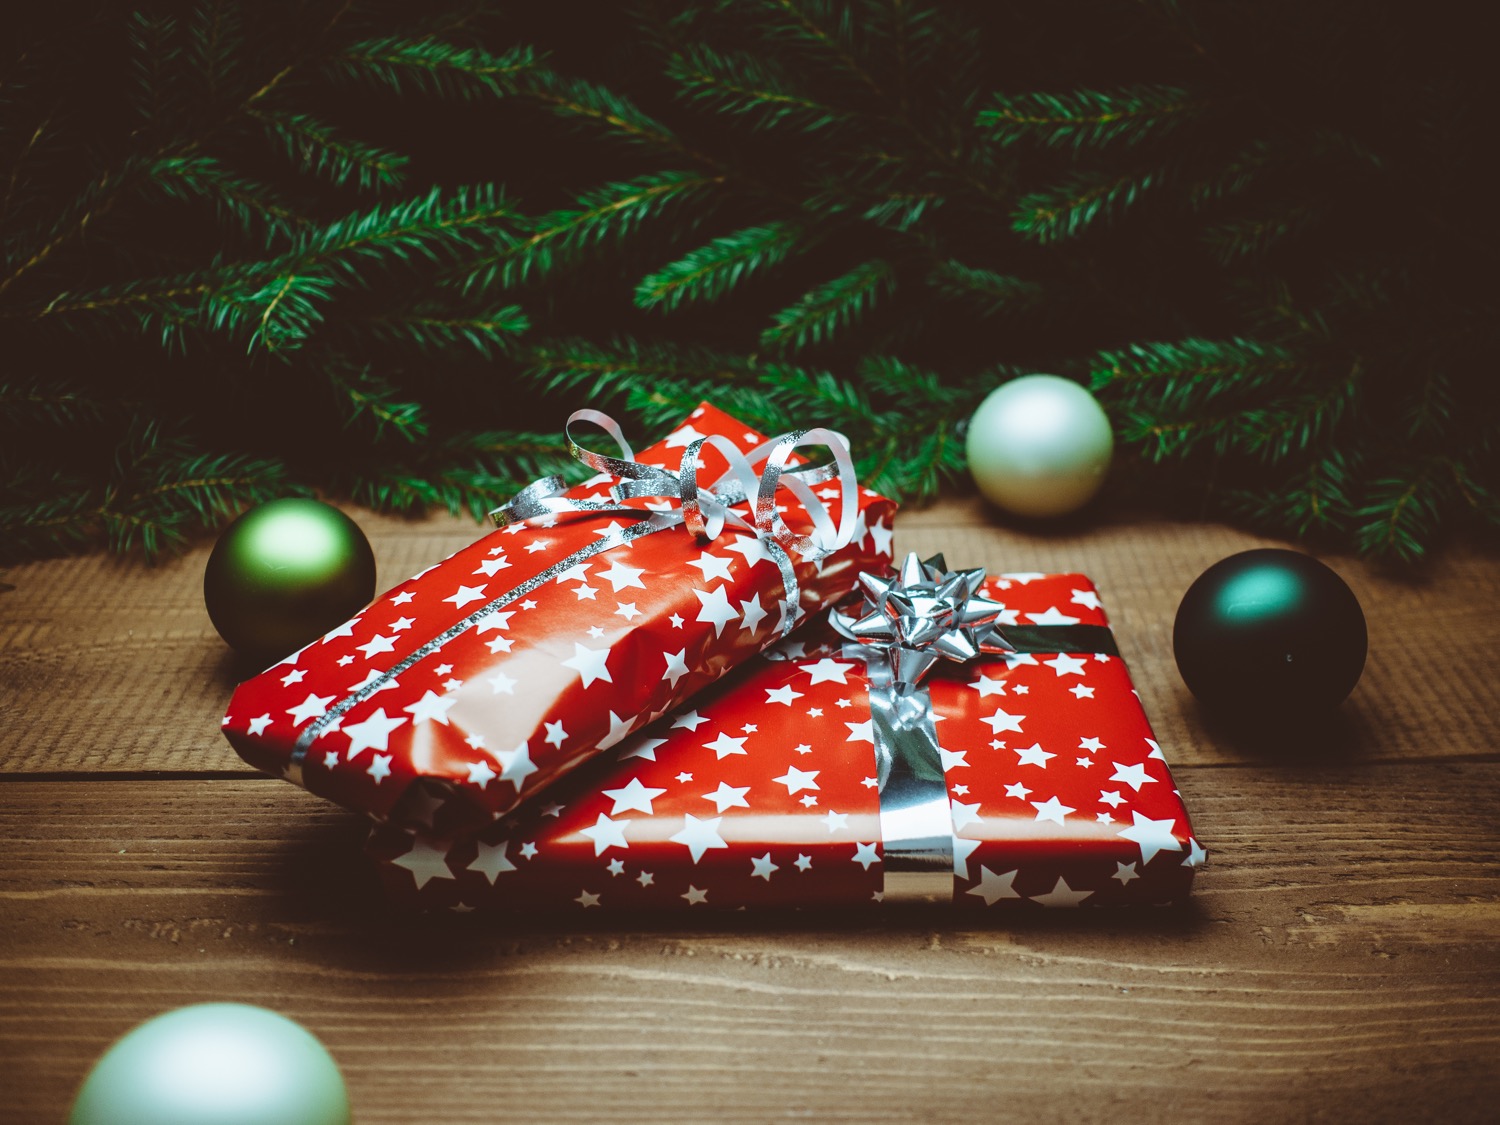 selfpackaging-natale-christmas-regali-gift